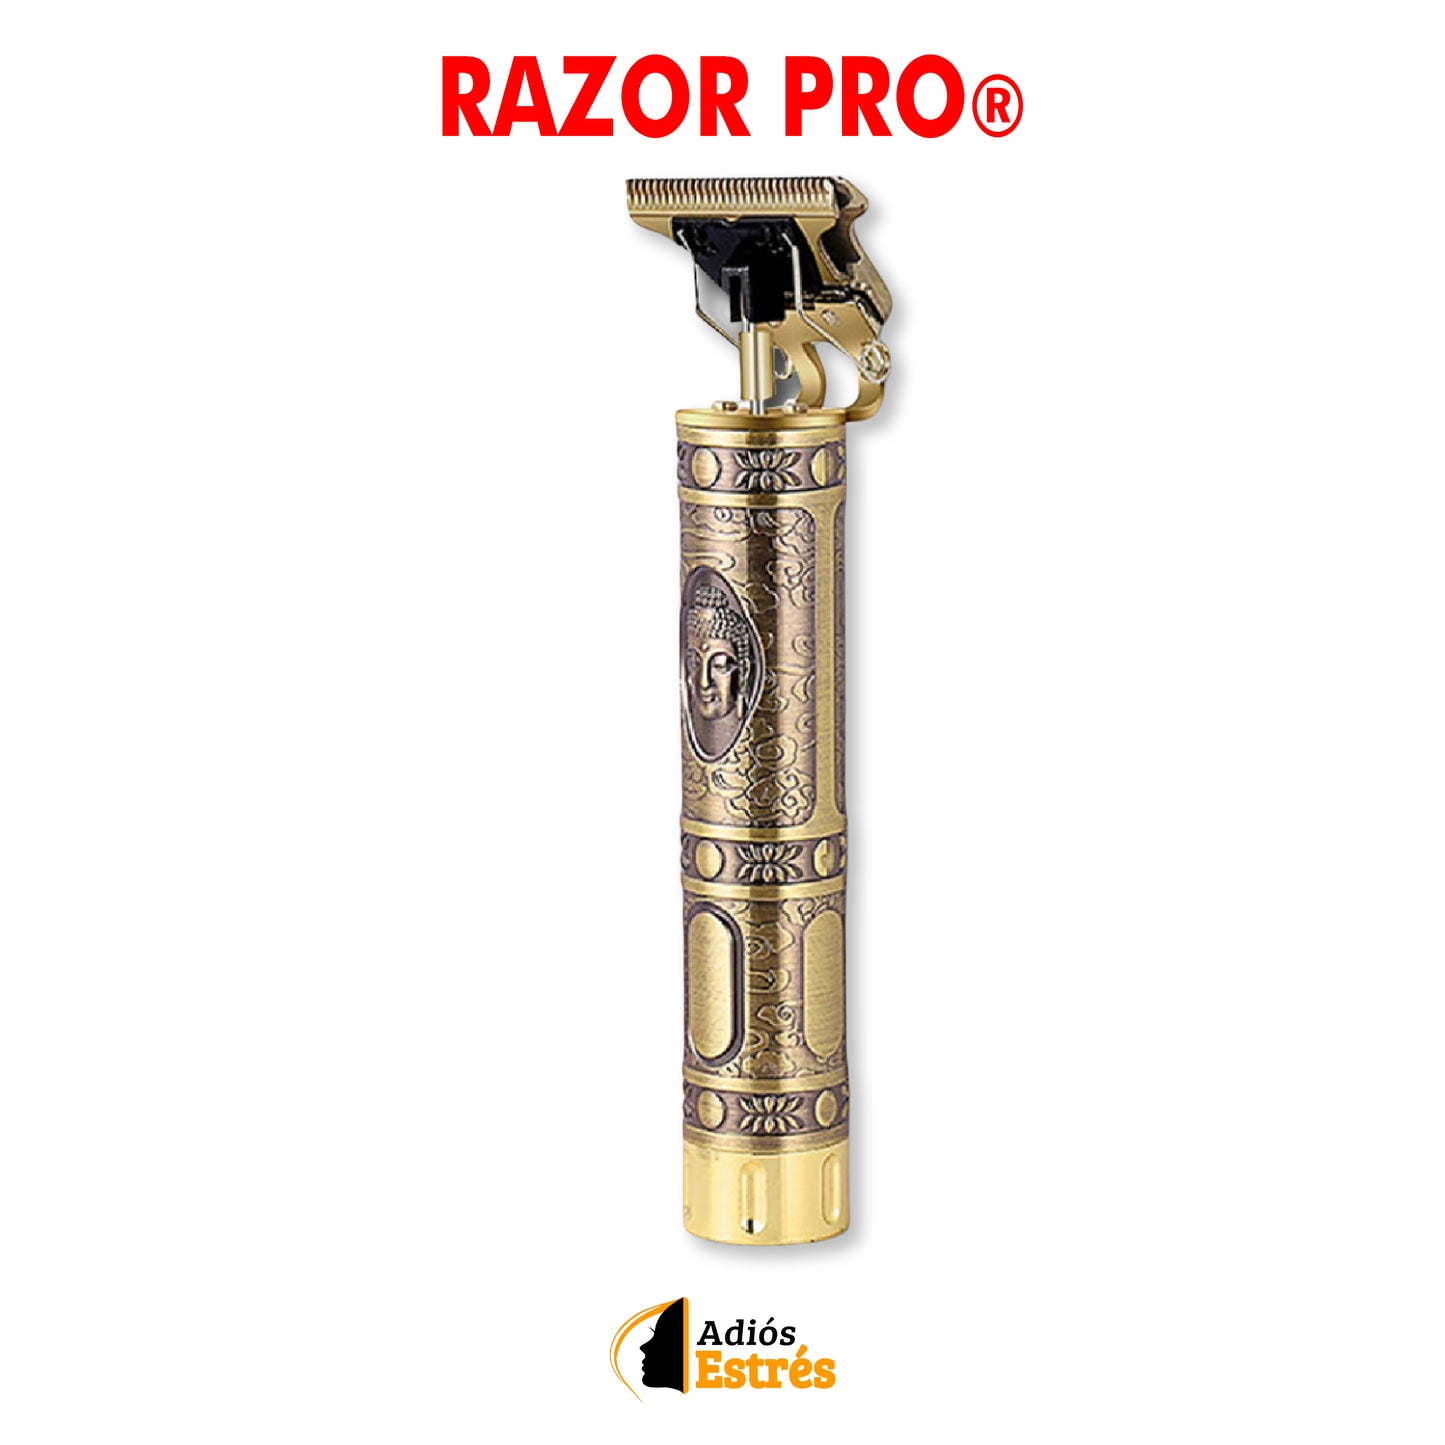 Razor Pro®